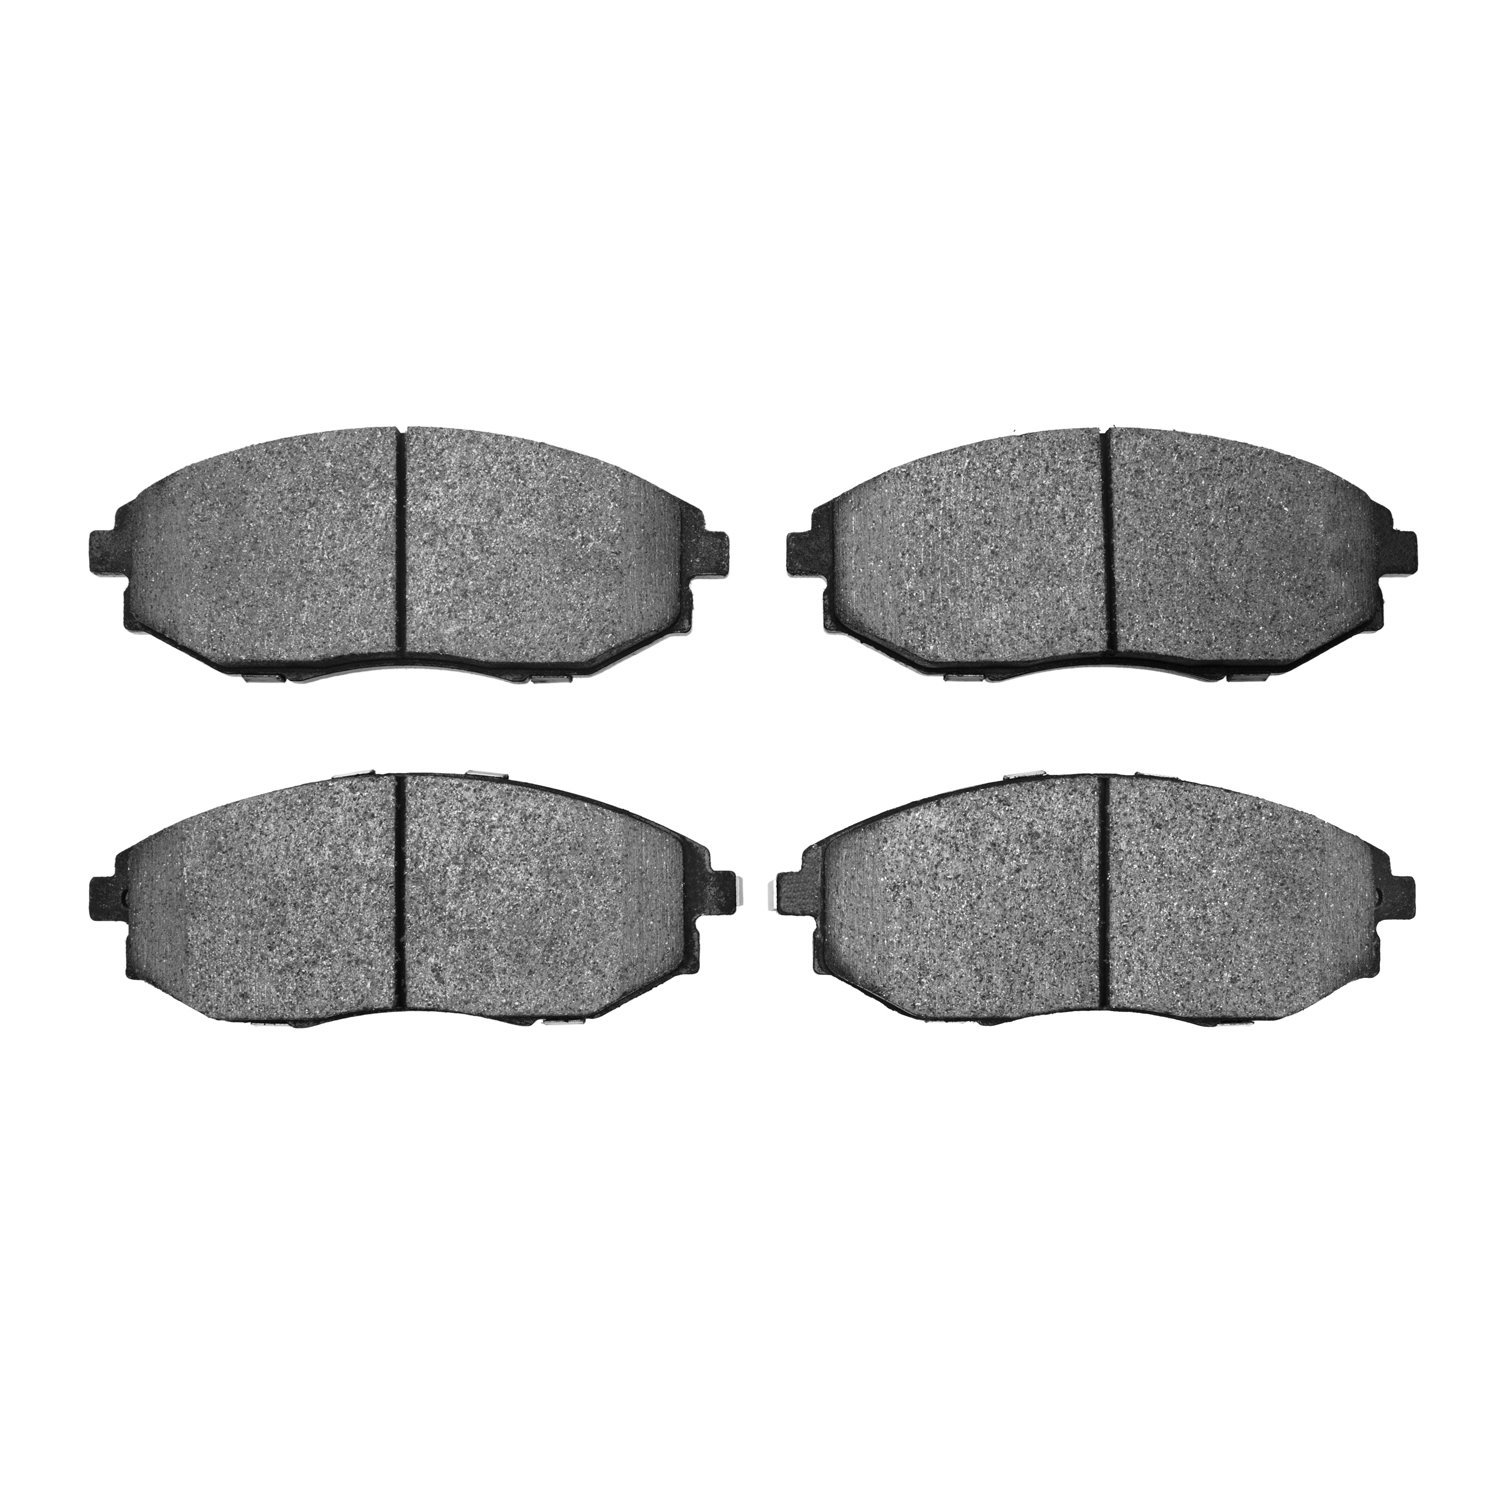 Ceramic Brake Pads, 2004-2010 Fits Multiple Makes/Models, Position: Front